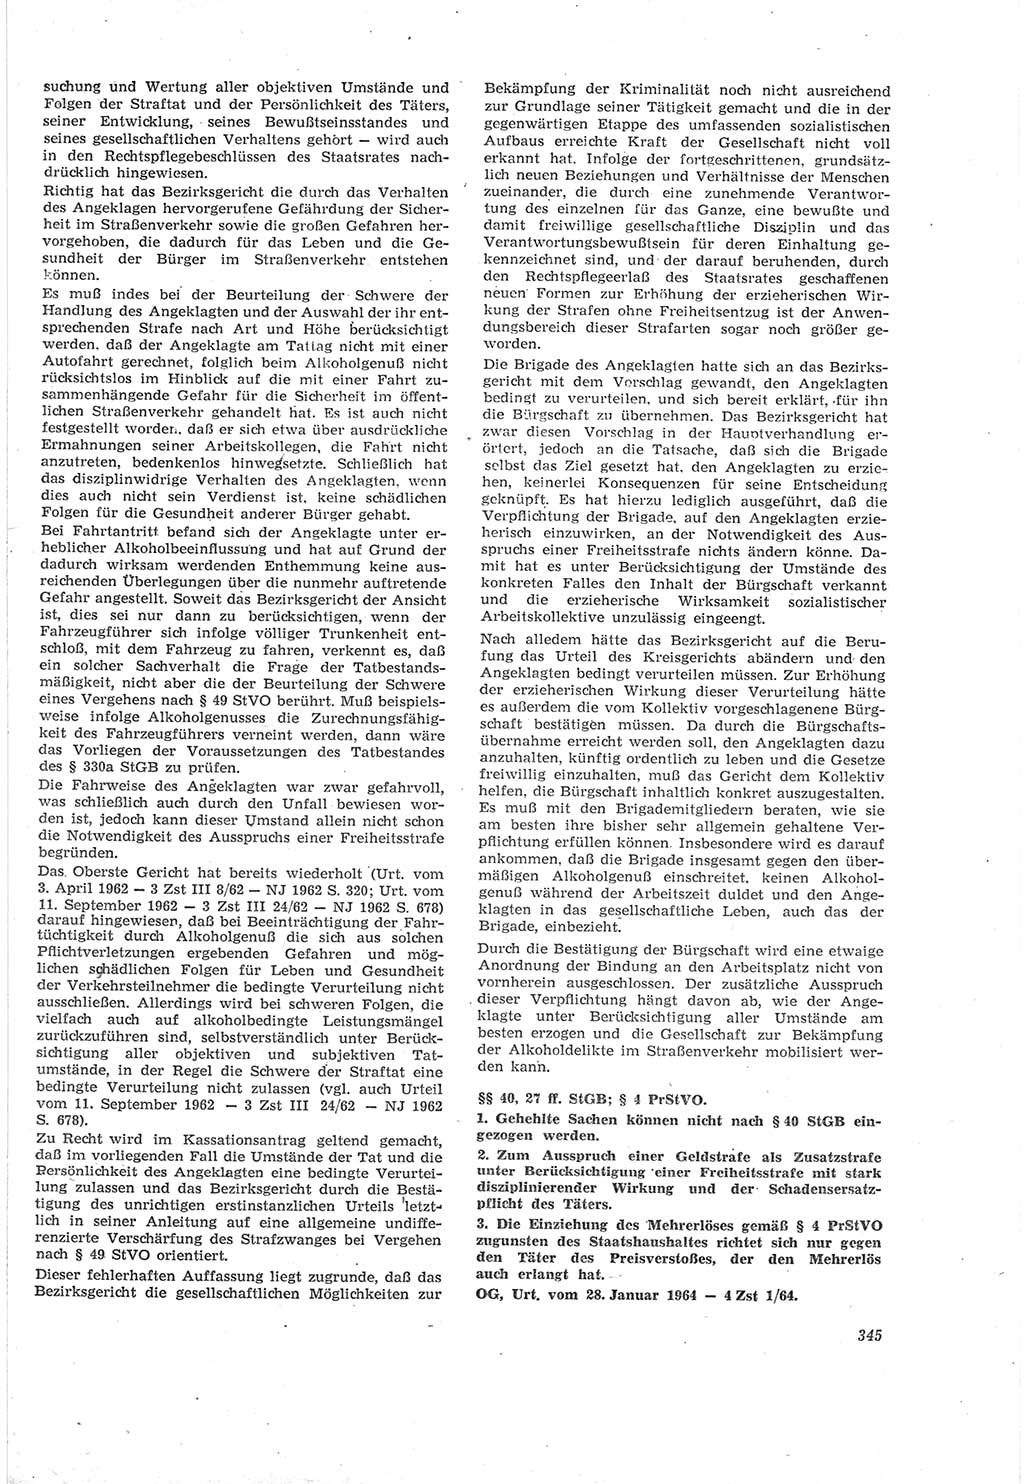 Neue Justiz (NJ), Zeitschrift für Recht und Rechtswissenschaft [Deutsche Demokratische Republik (DDR)], 18. Jahrgang 1964, Seite 345 (NJ DDR 1964, S. 345)